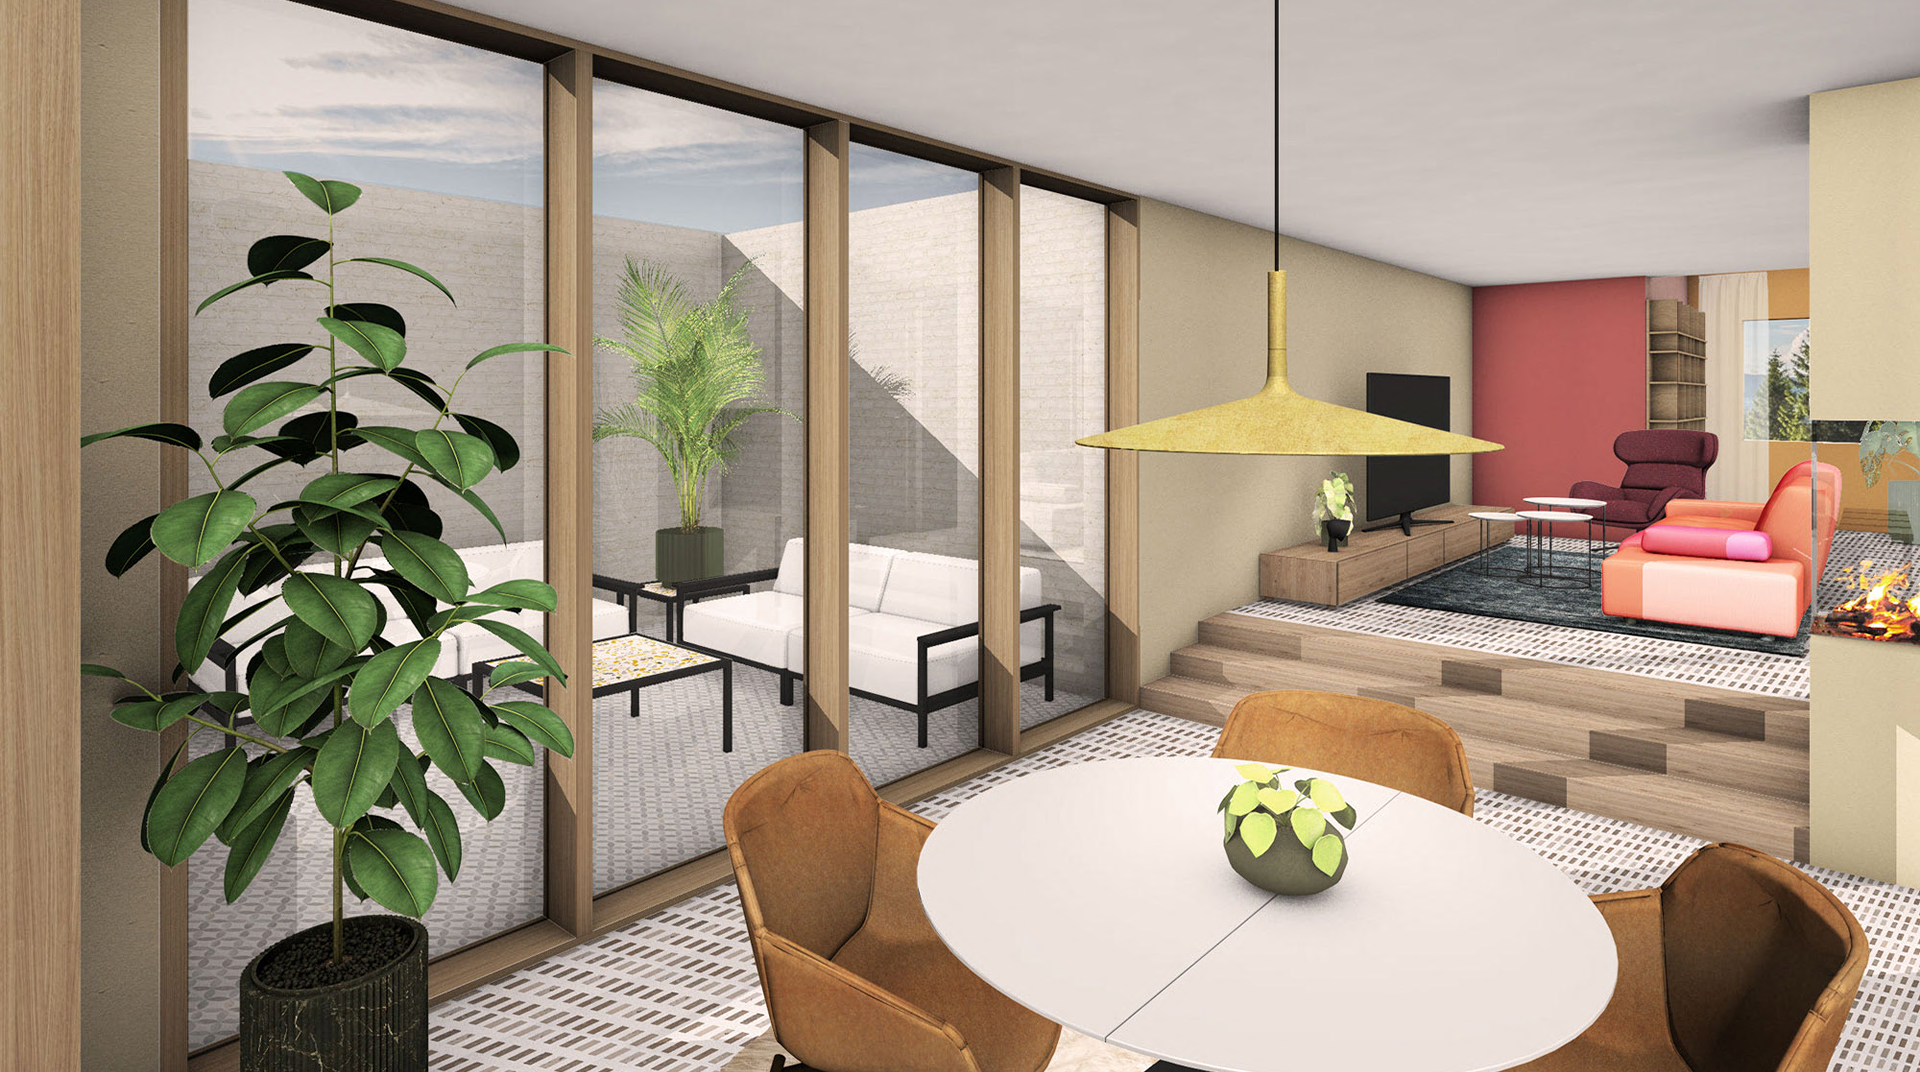 Wedox Objektreferenz Wohnzimmer mit Essbereich in 3D Simulation